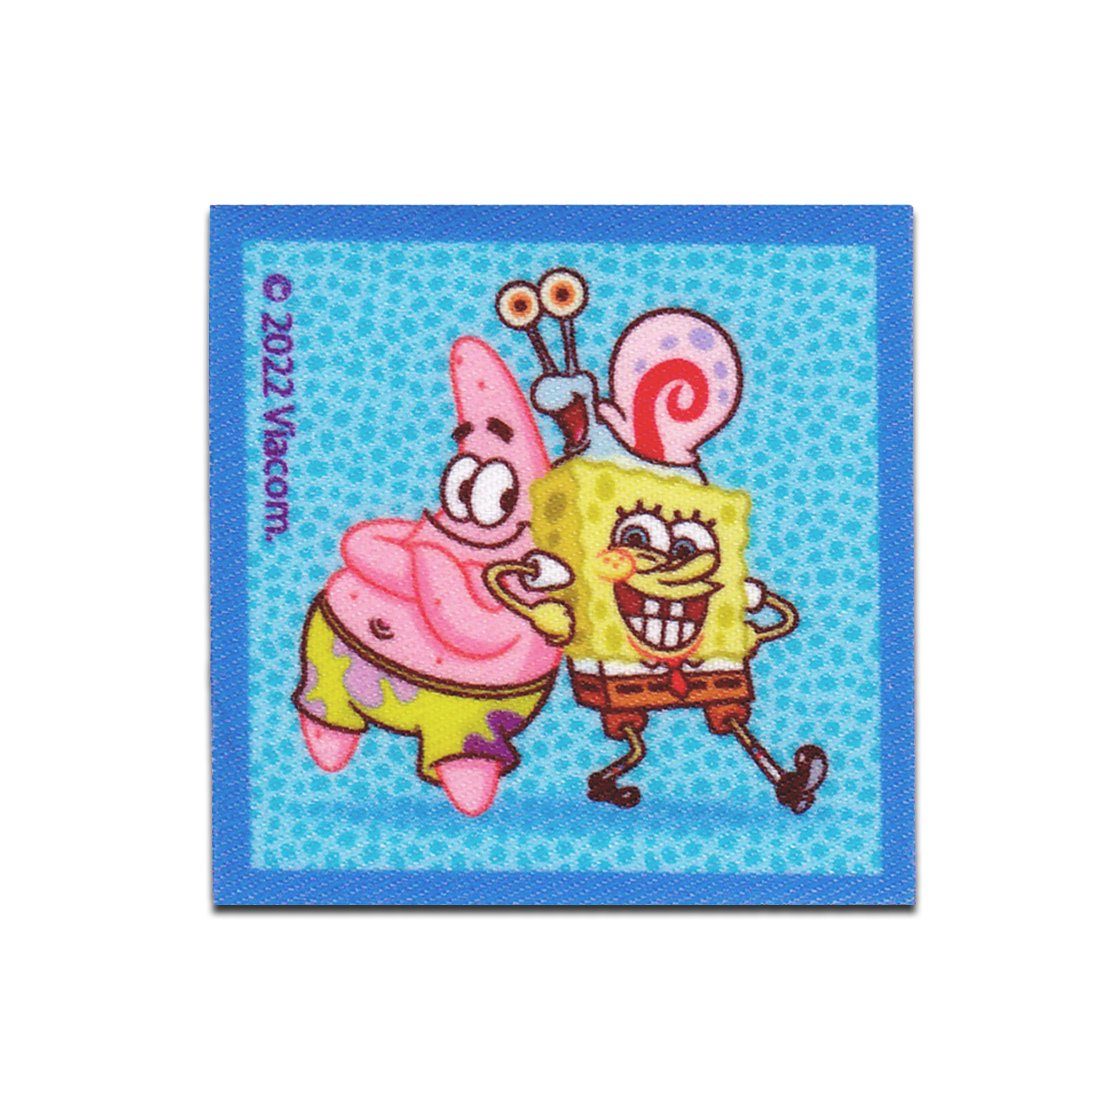 Spongebob Schwammkopf Aufnäher Bügelbild, Aufbügler, Applikationen, Patches, Flicken, zum aufbügeln, Polyester, SpongeBob Schwammkopf © Patrick Garry gedruckt - Größe: 5,7 x 5,7 cm